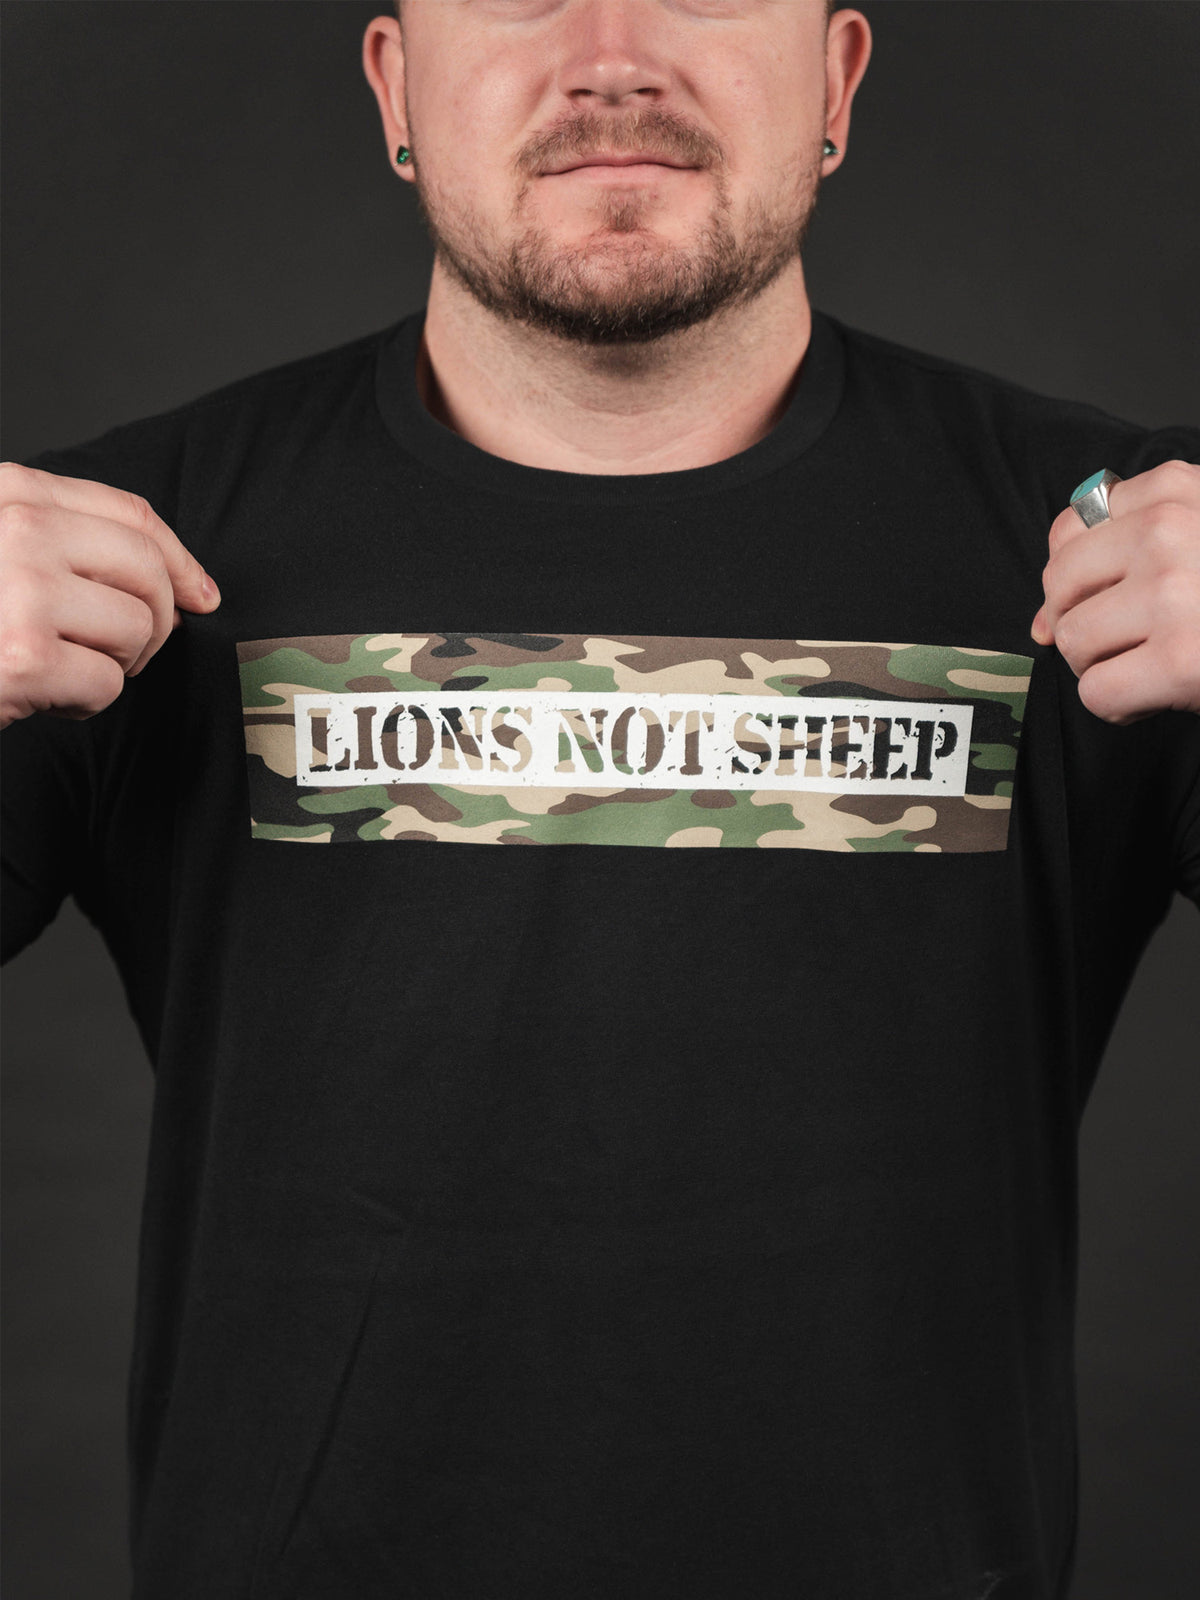 GUNNER 2.0 Tee - Lions Not Sheep ®